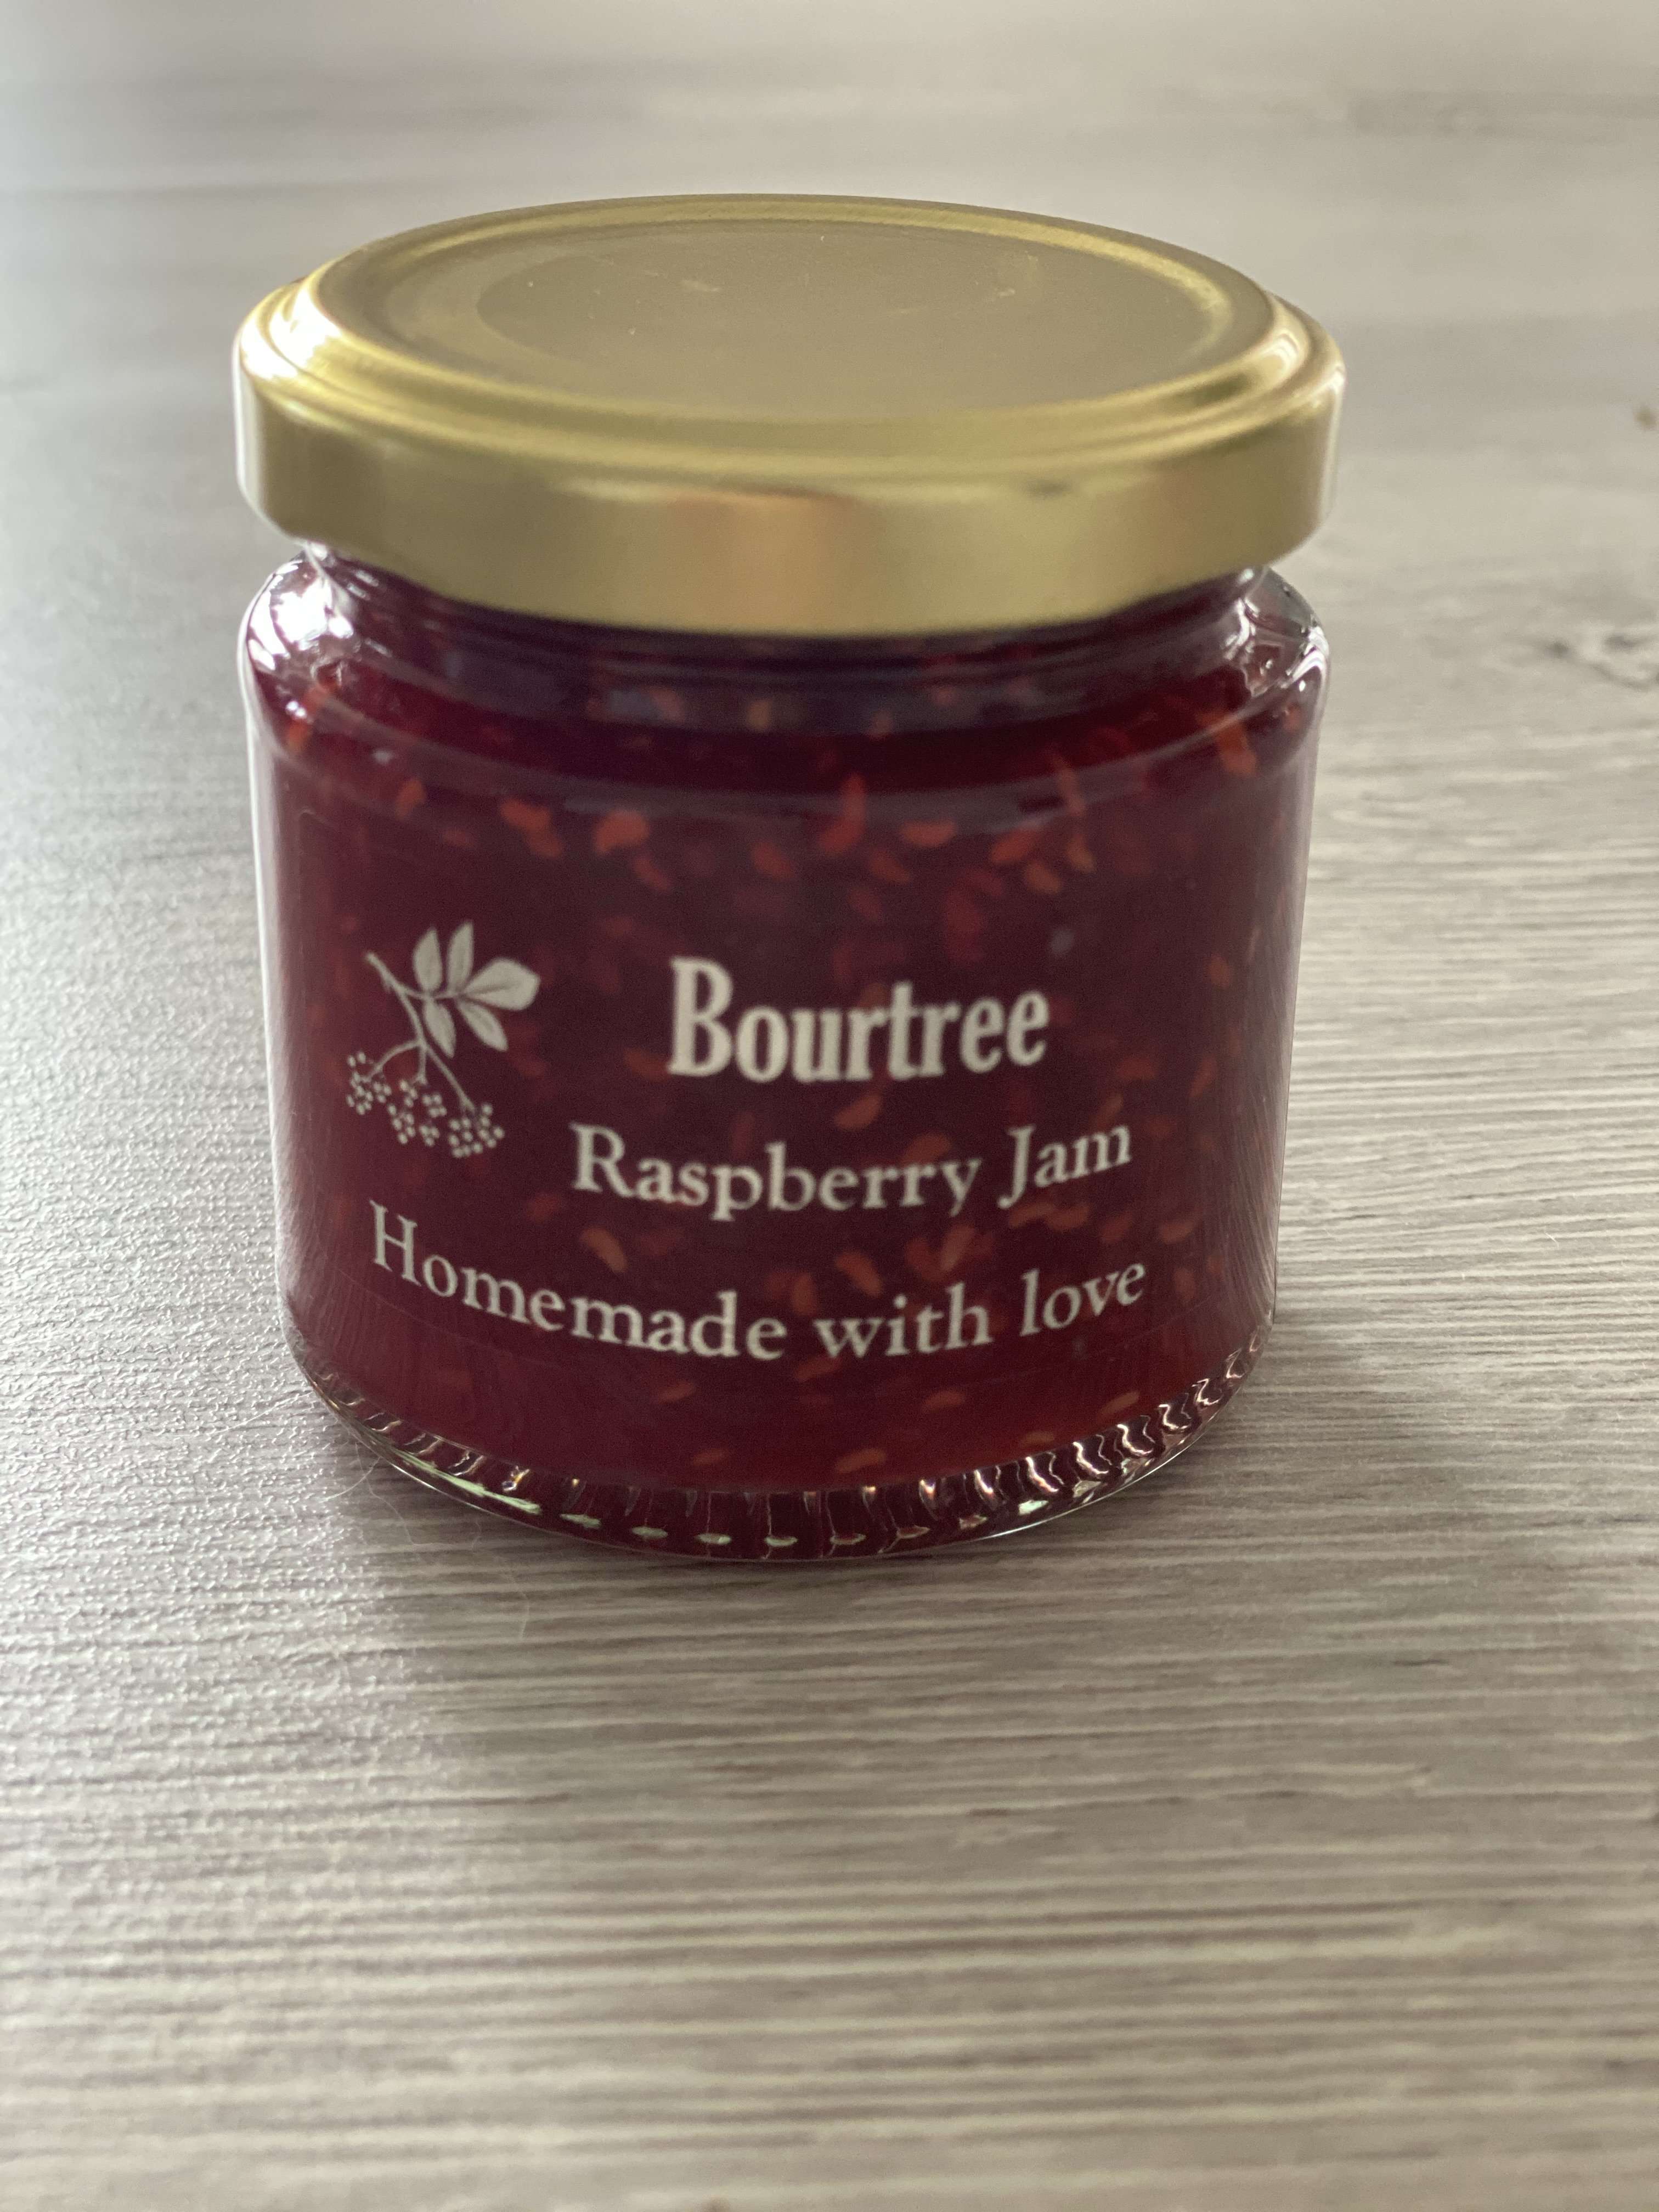 Bourtree Raspberry Jam Jams